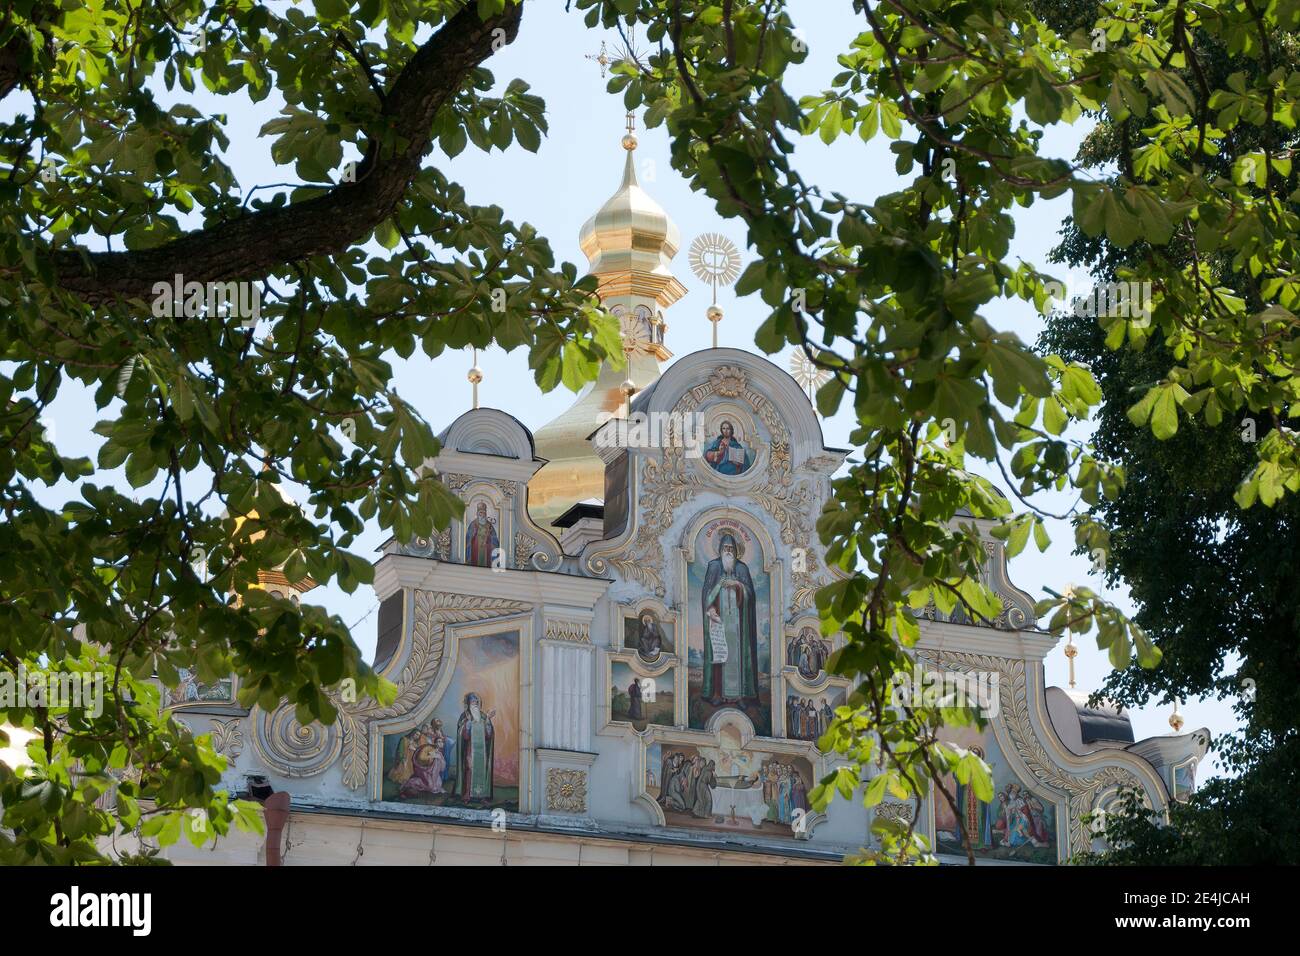 Kiev Ukraine, vue sur les peintures murales du toit de la cathédrale de Dormition décorée de façon ornée à travers les branches d'arbres Banque D'Images